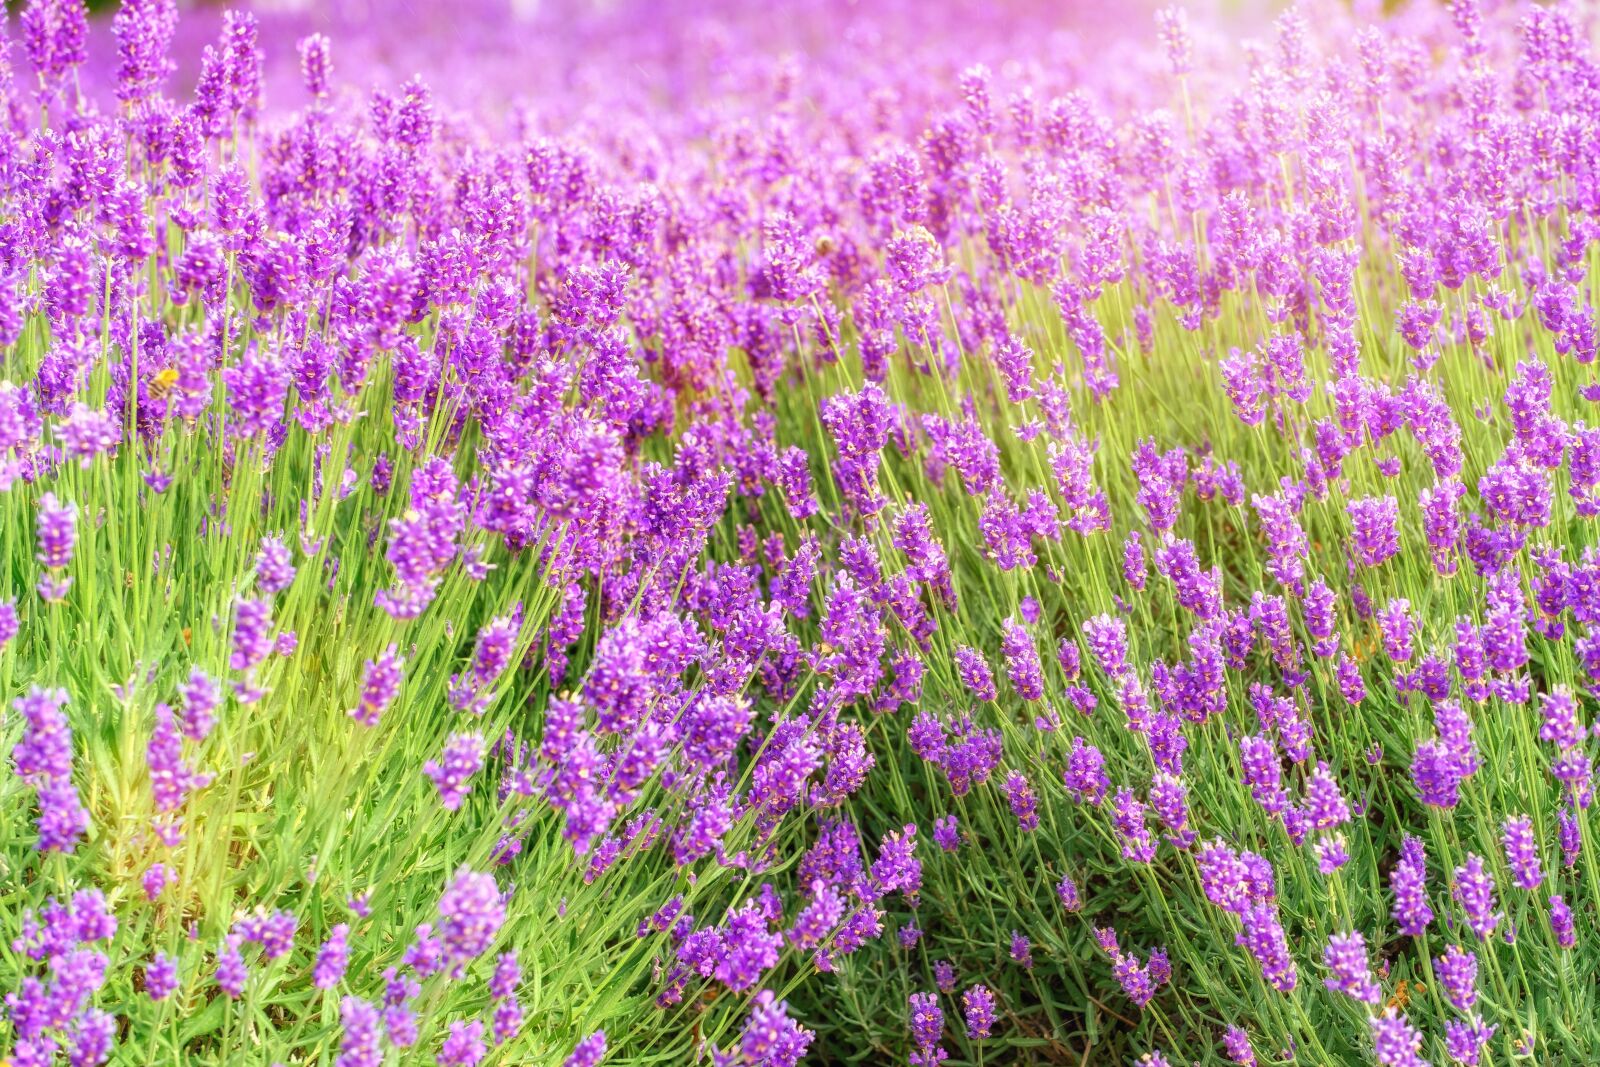 Fujifilm X-T2 + Fujifilm XF 80mm F2.8 R LM OIS WR Macro sample photo. Lavender, flower, blossom photography